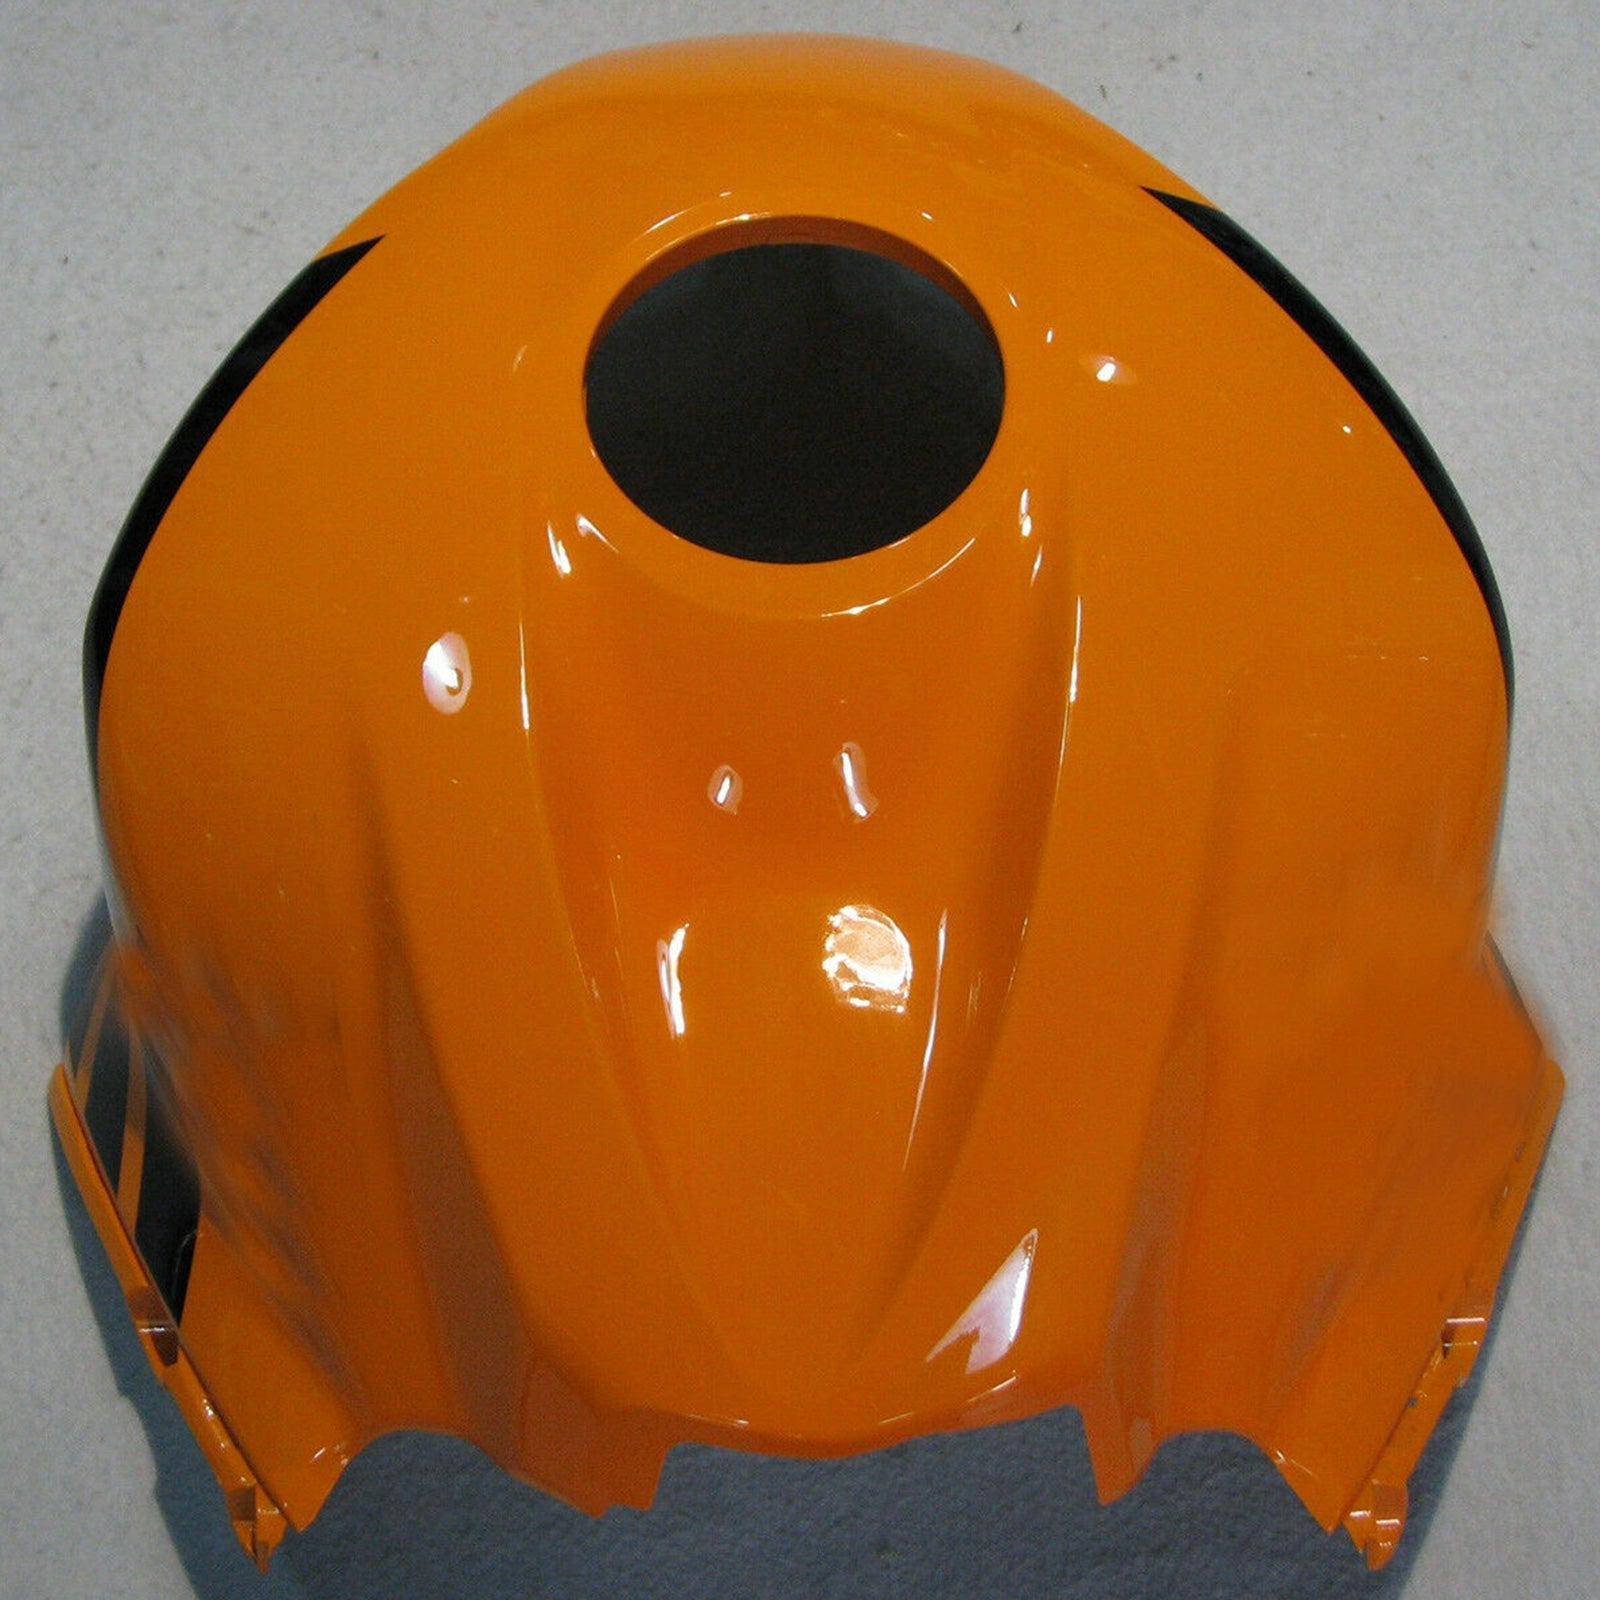 Kit de carénage Amotopart pour Honda CBR 600 RR F5 2009-2012 10 11 Orange Noir Generic